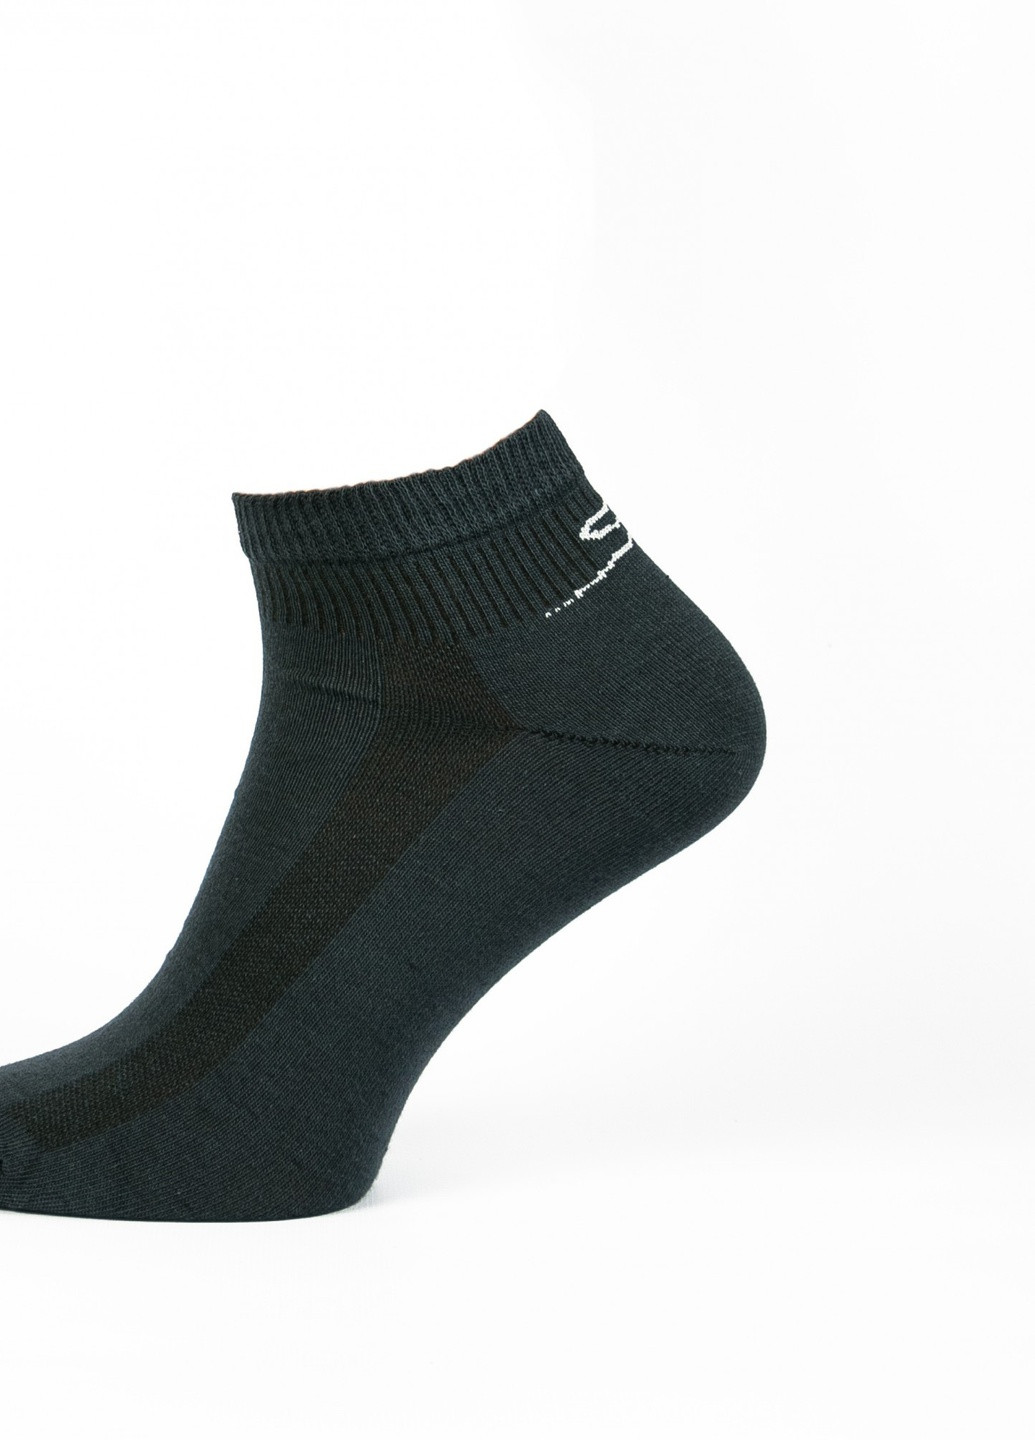 Шкарпетки Нова пара 432, спорт 39-41р. колір-джинс НОВА ПАРА коротка висота з ущільненім носком однотонні темно-сірі спортивні